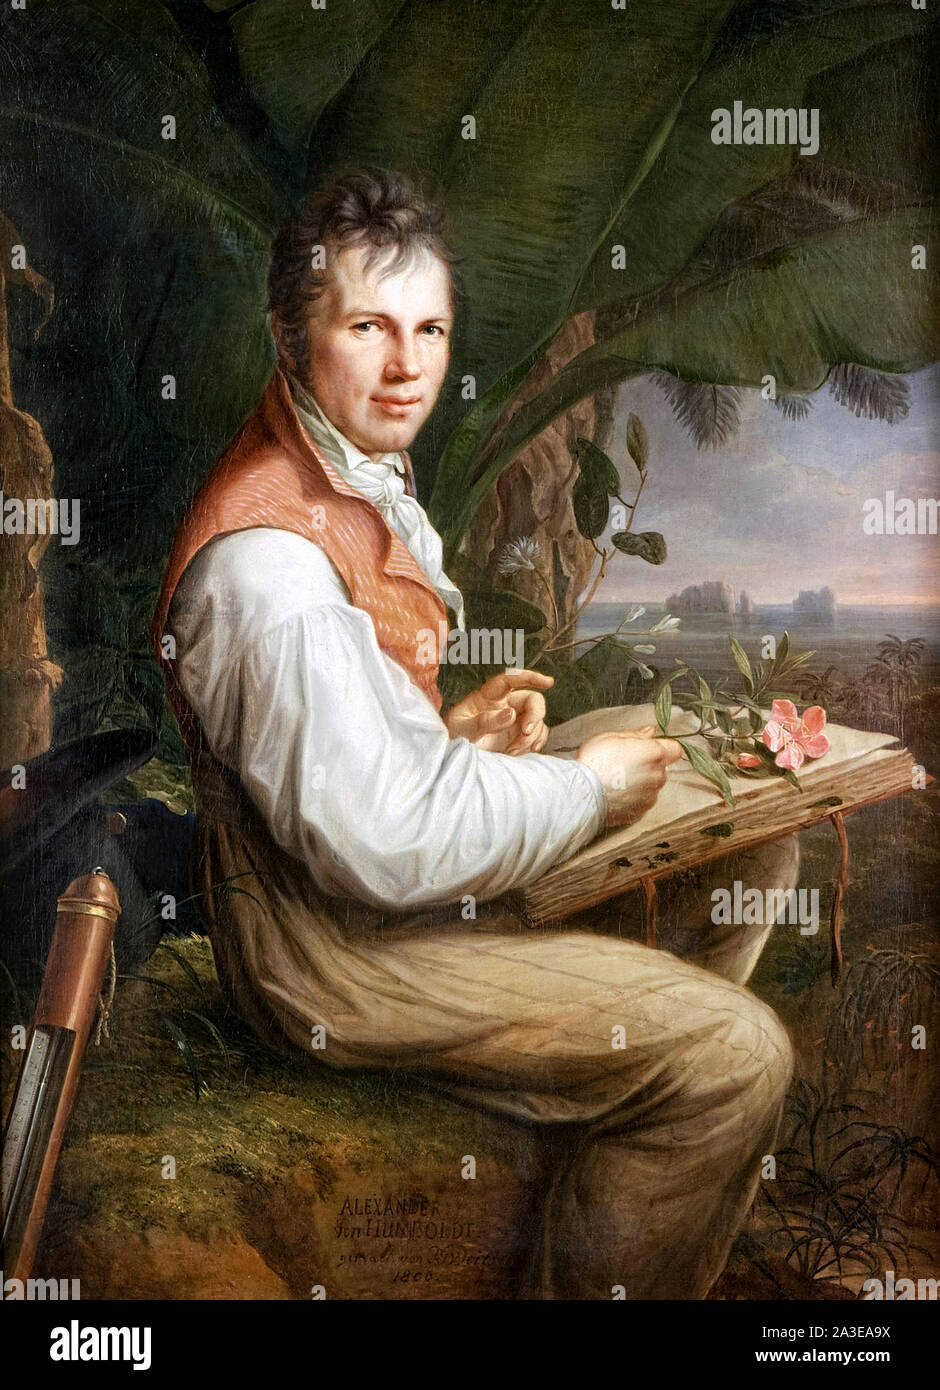 Alexander von Humboldt (1769-1859) mathématicien prussien un éminent naturaliste et explorateur qui a beaucoup voyagé en Amérique du Nord et du Sud et a été le premier à décrire le changement climatique dû aux activités humaines. Portrait de Friedrich Georg Weitsch (1758-1828) peint en 1806 montrant l'examen d'un spécimen de l'usine de Humboldt au Venezuela en 1799. Banque D'Images